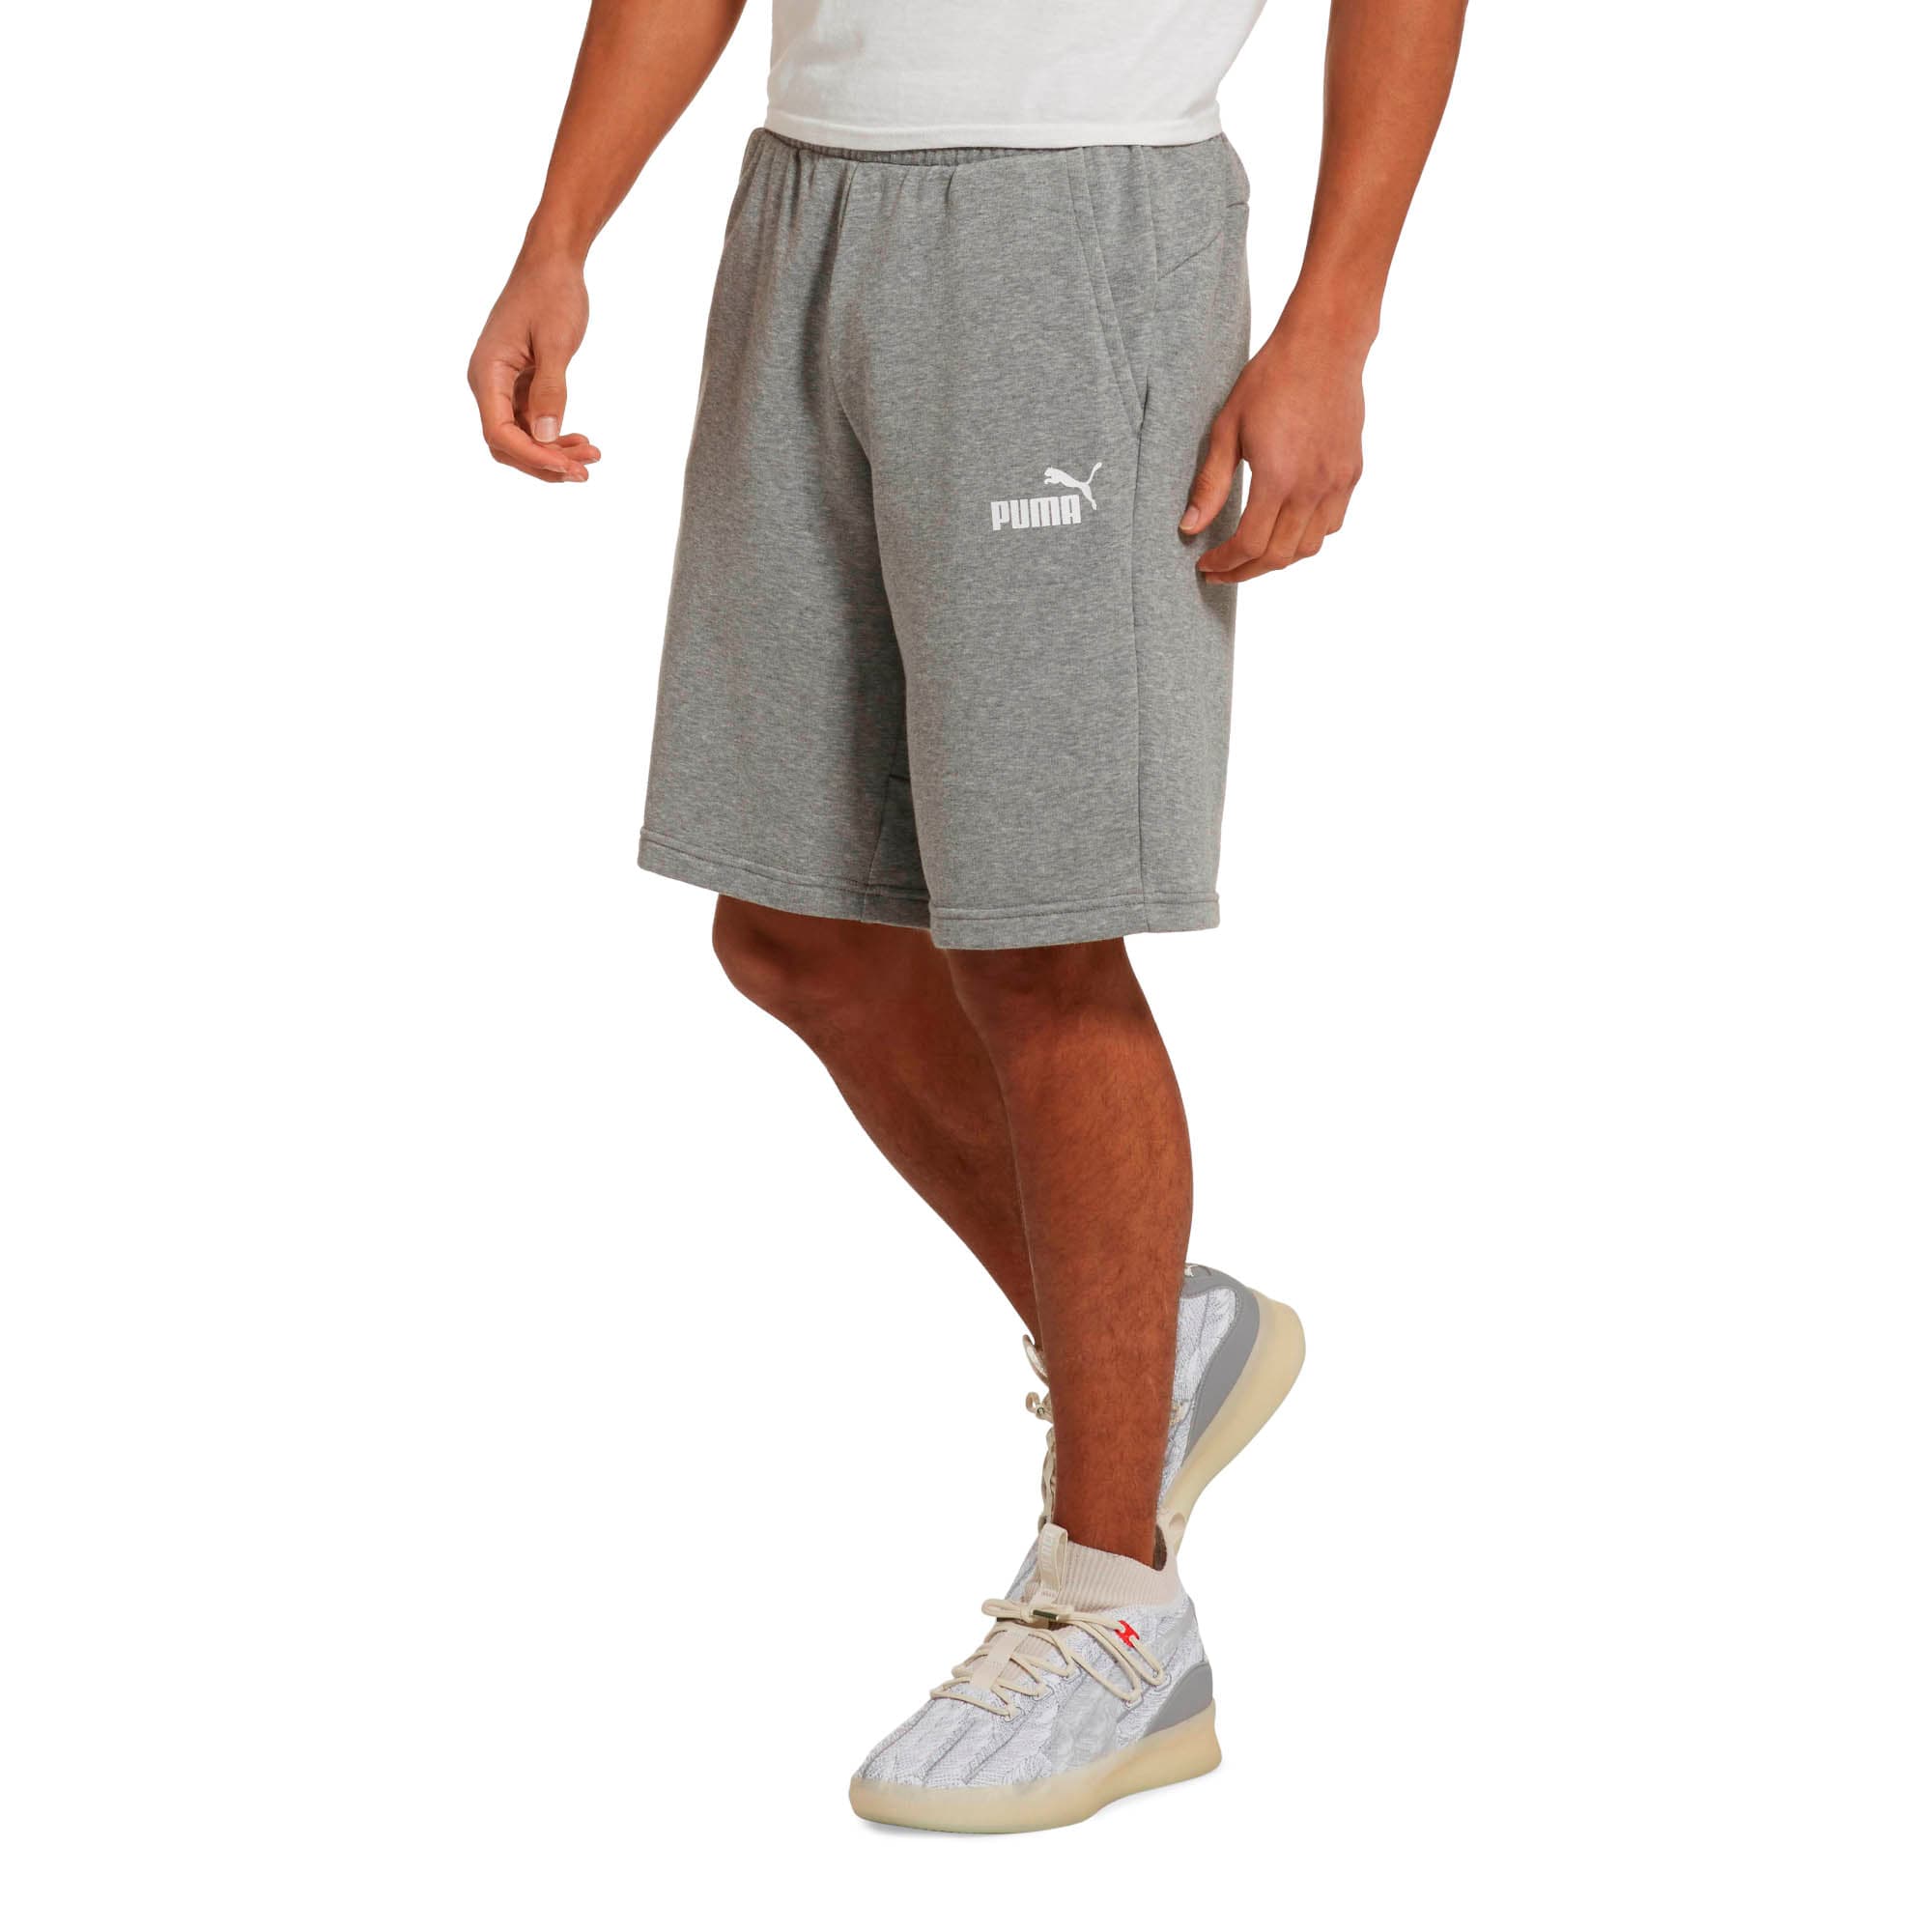 puma lifestyle shorts